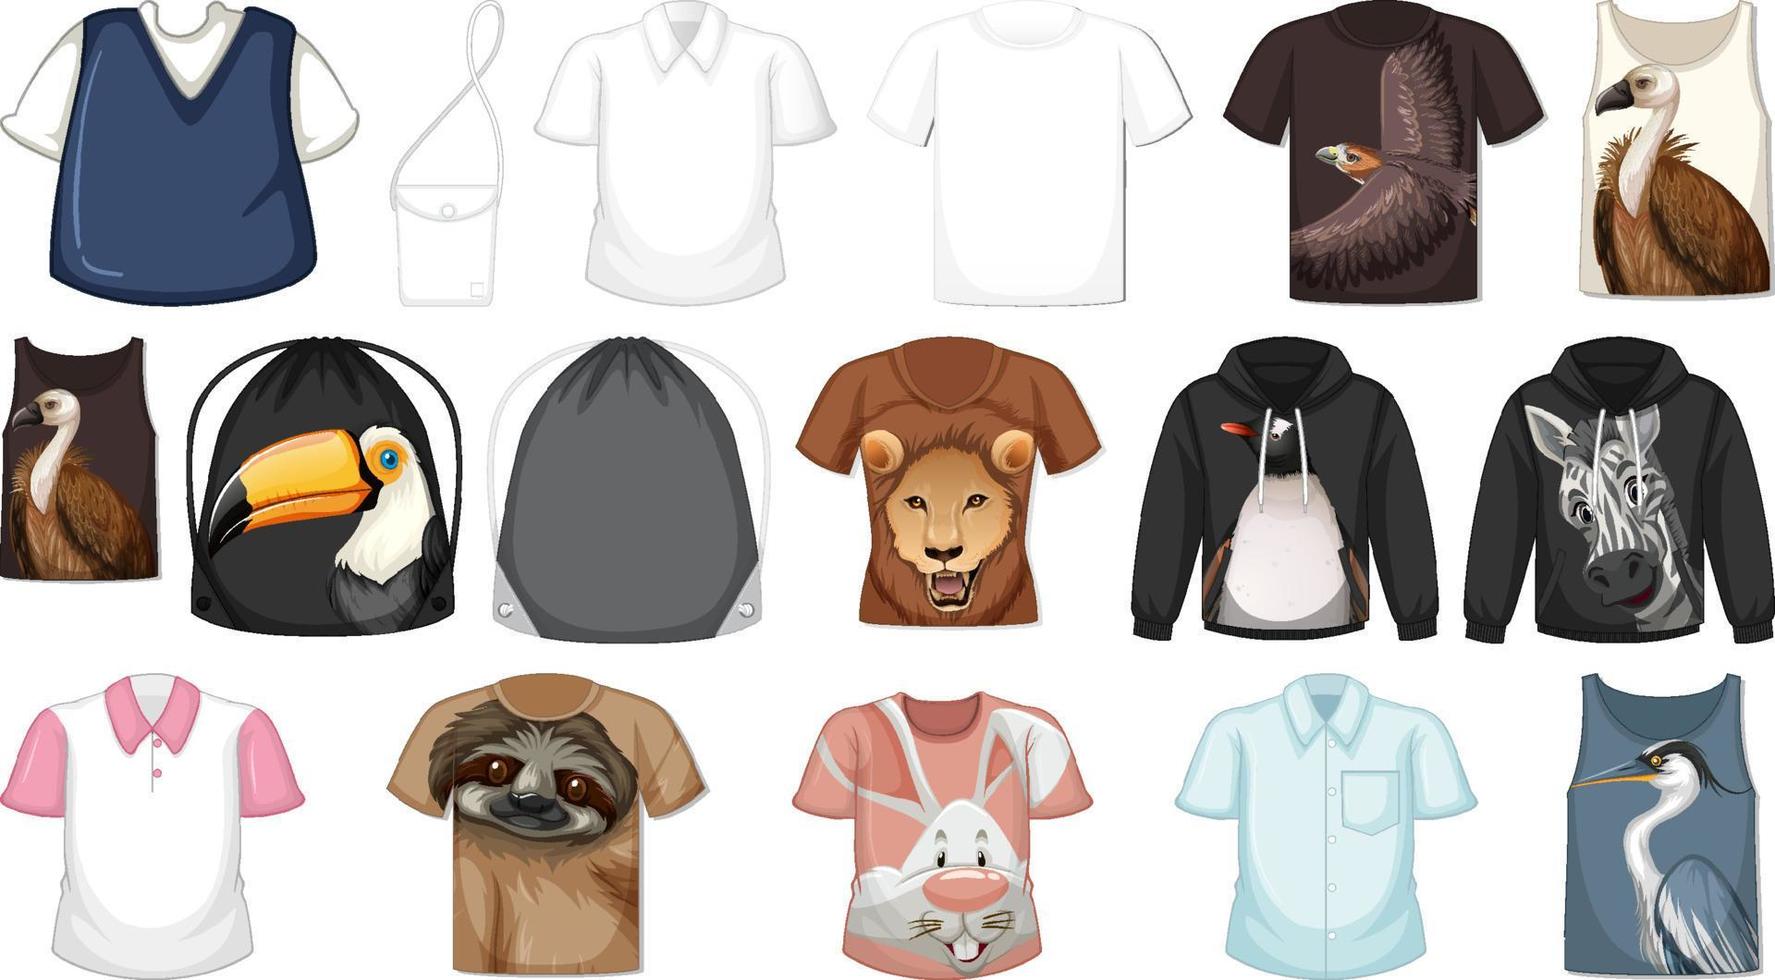 set van verschillende shirts en accessoires met dierenpatronen vector